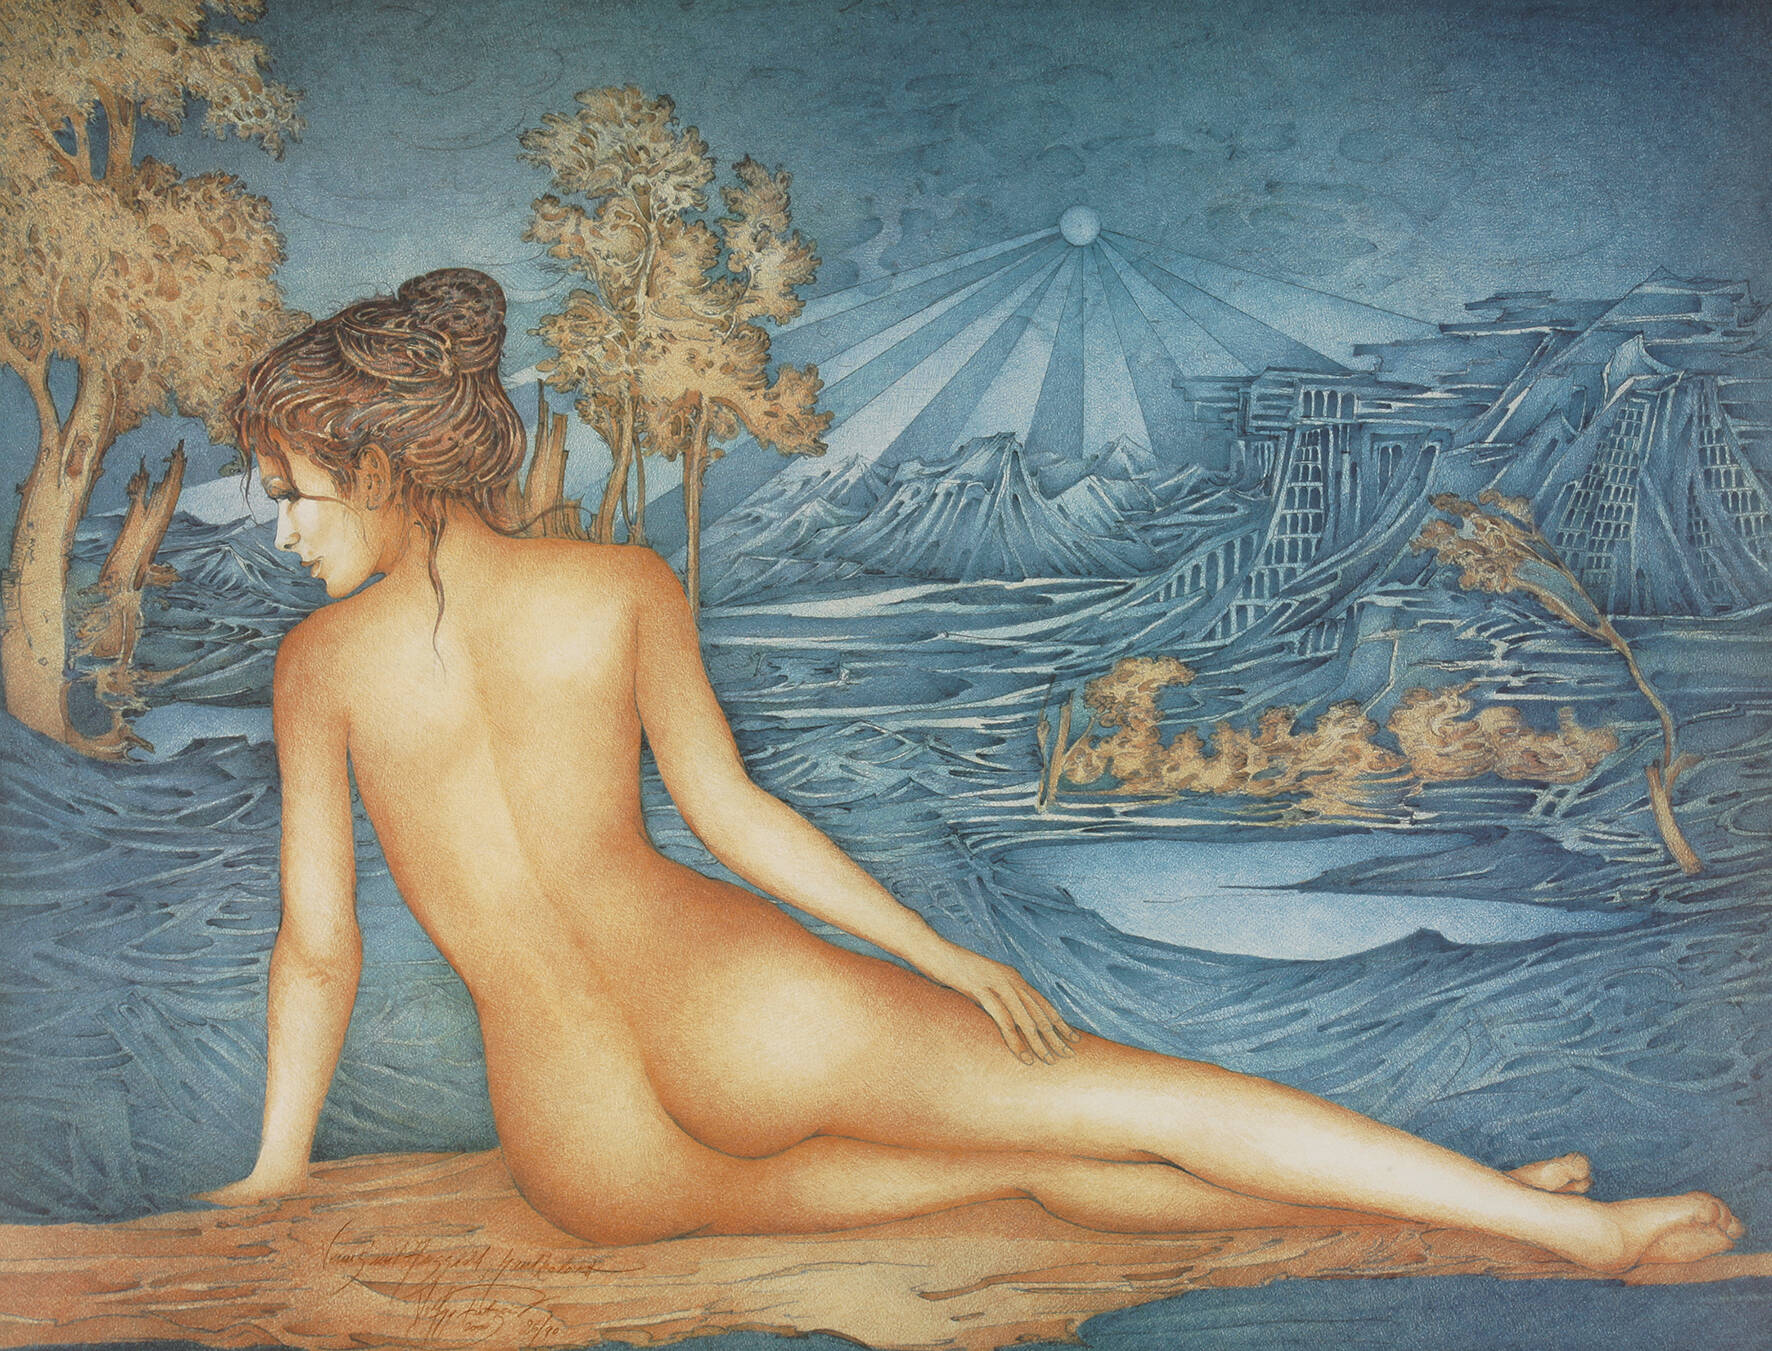 Wolfgang Fratscher, "Venus mit Aussicht"